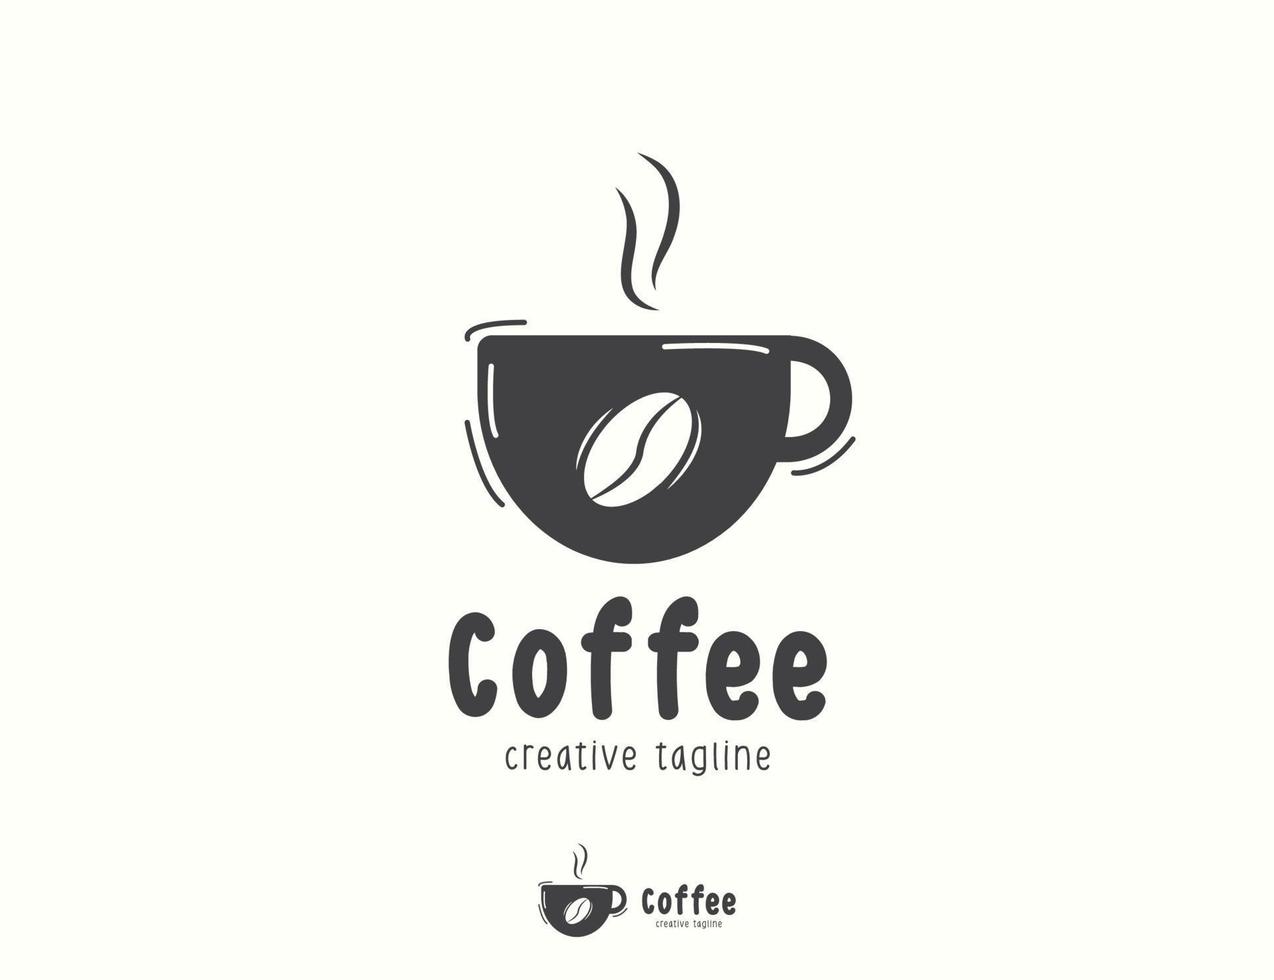 koffiekopje logo ontwerp vector